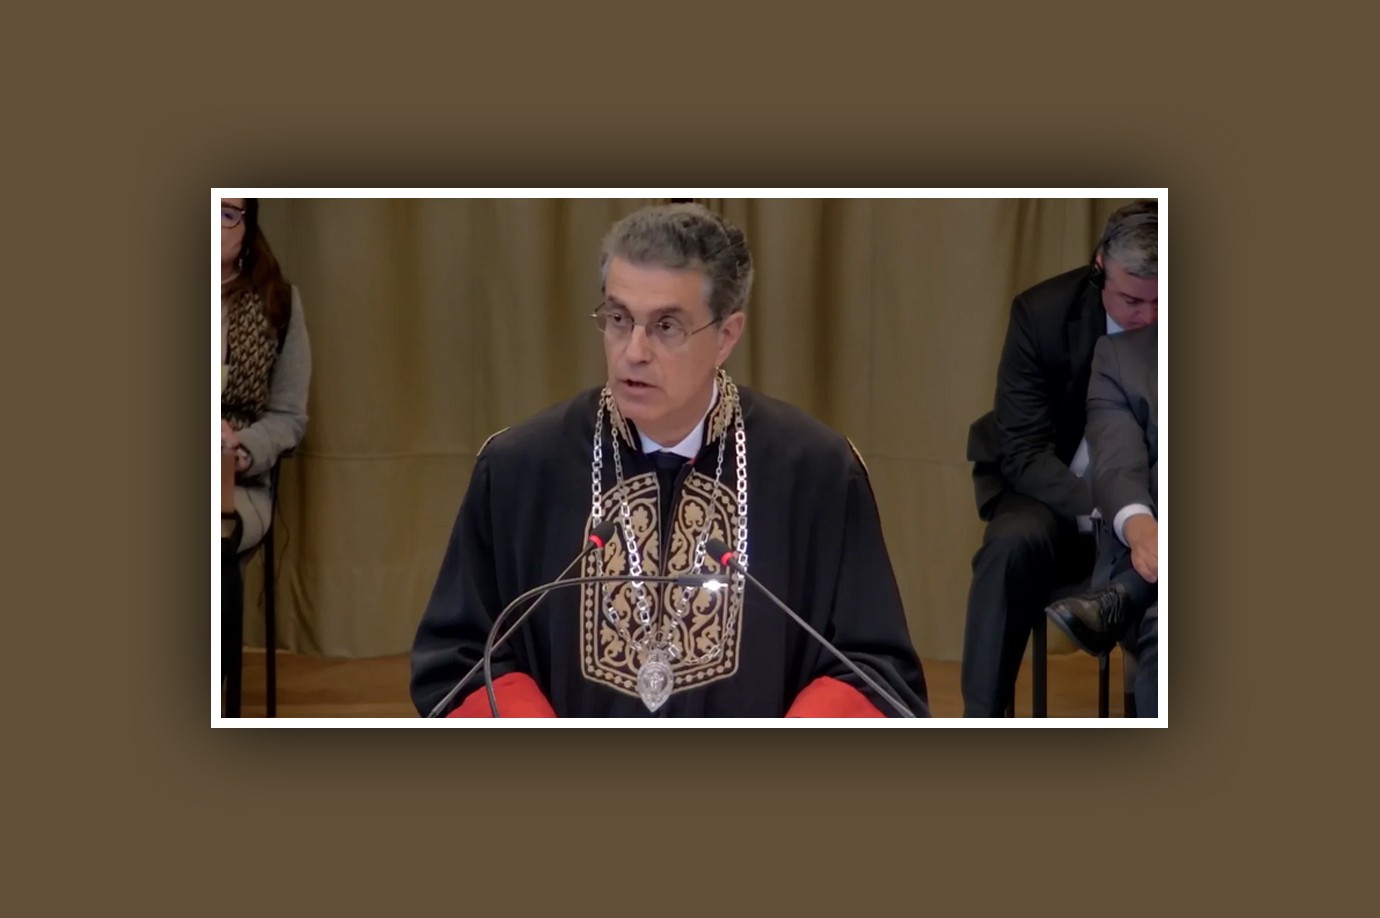  Ο Κοσμήτωρ της Νομικής Σχολής Αθηνών σε ακροαματική διαδικασία στο Διεθνές Δικαστήριο της Χάγης